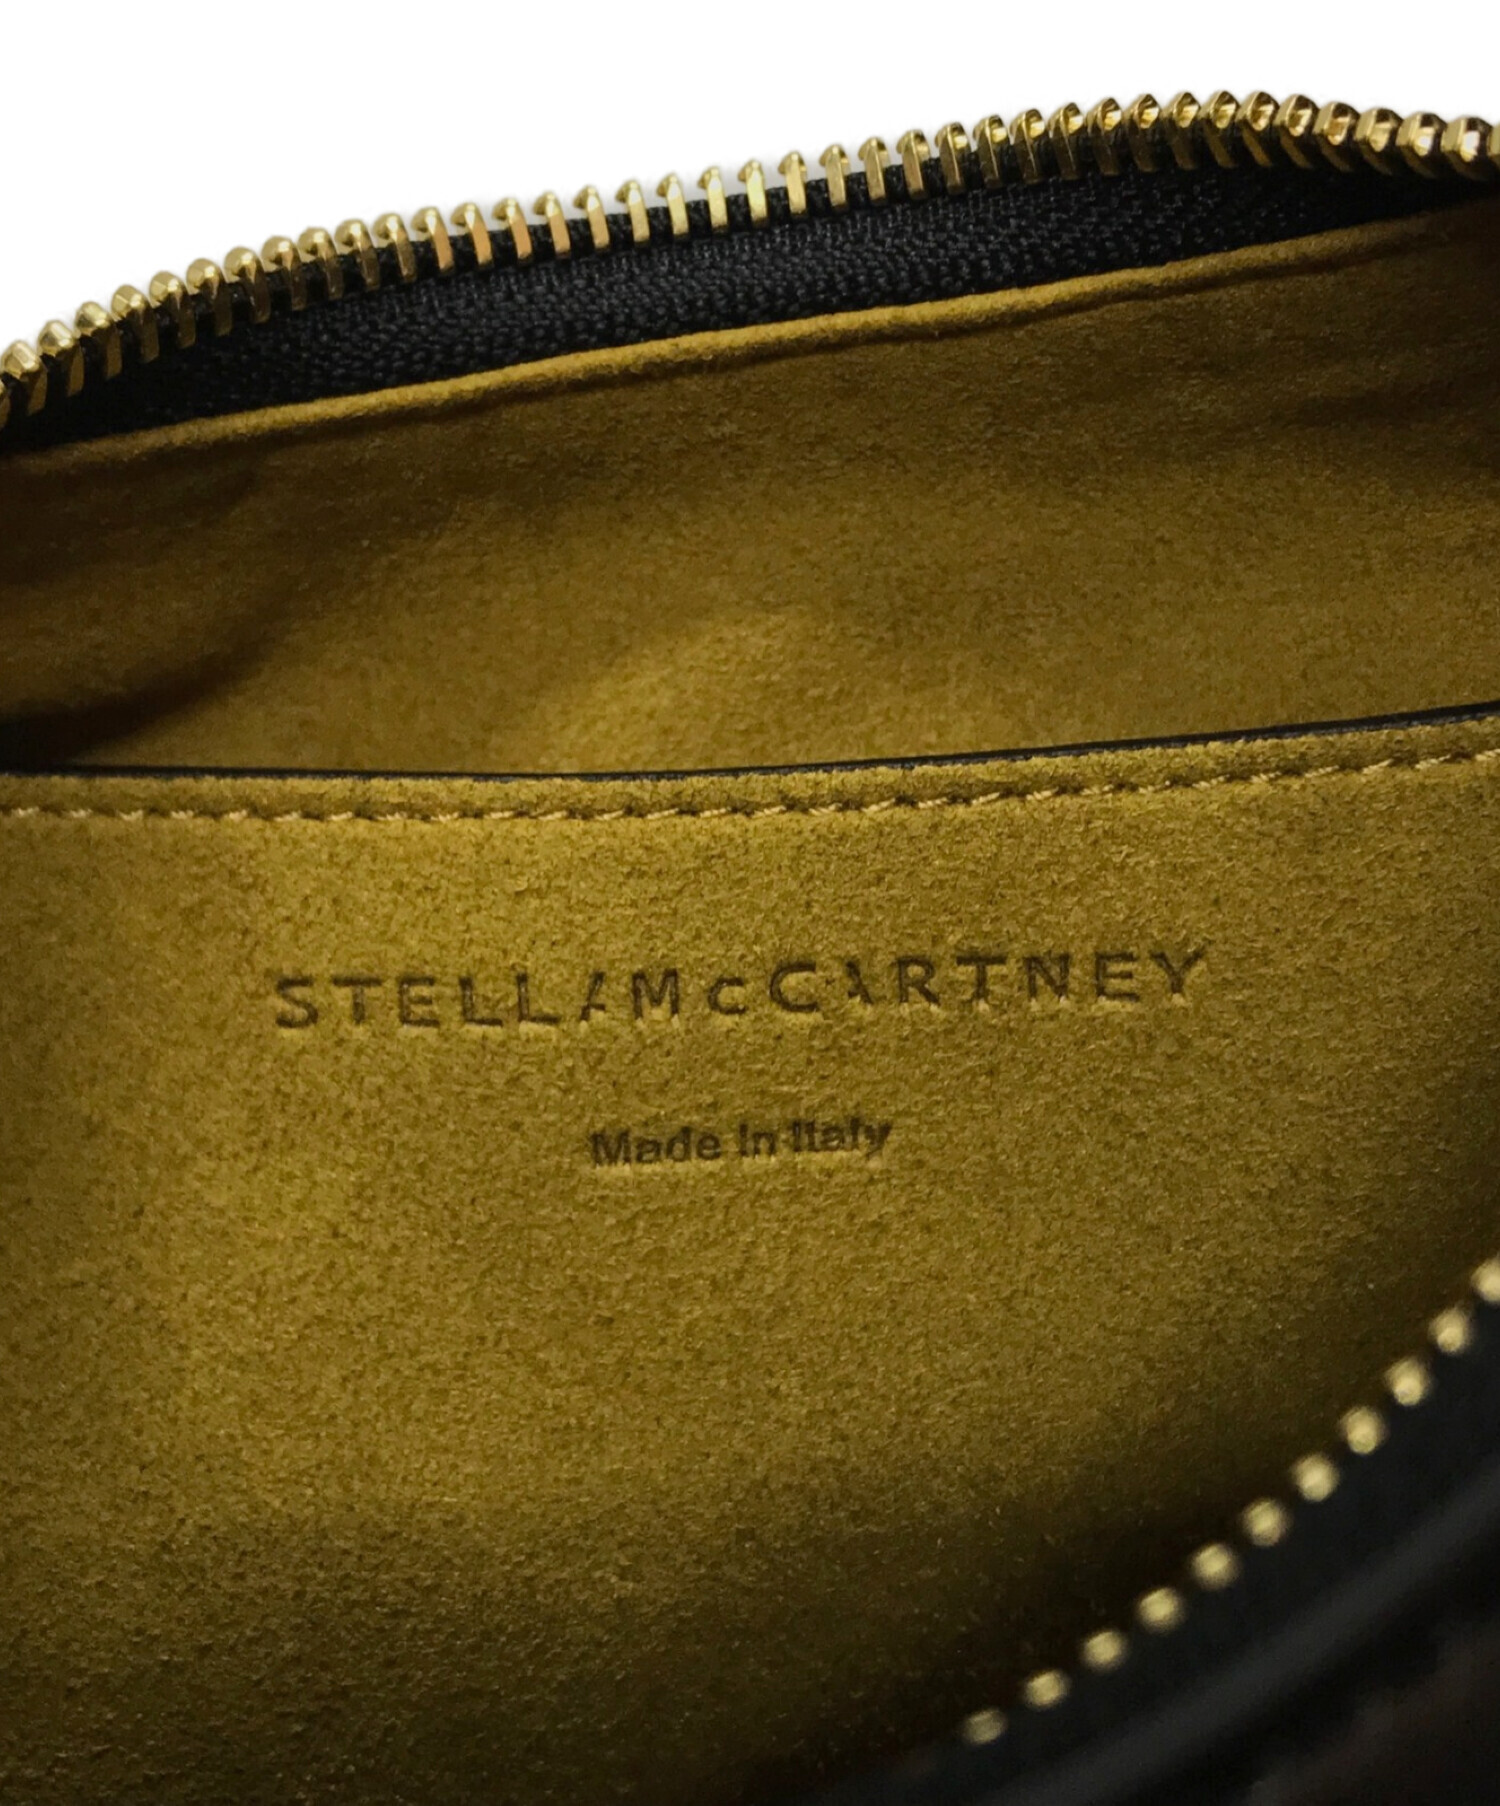 STELLA McCARTNEY (ステラマッカートニー) ハンドバッスモール ステラ ロゴ ホーボー ショルダーバッグ ブラック